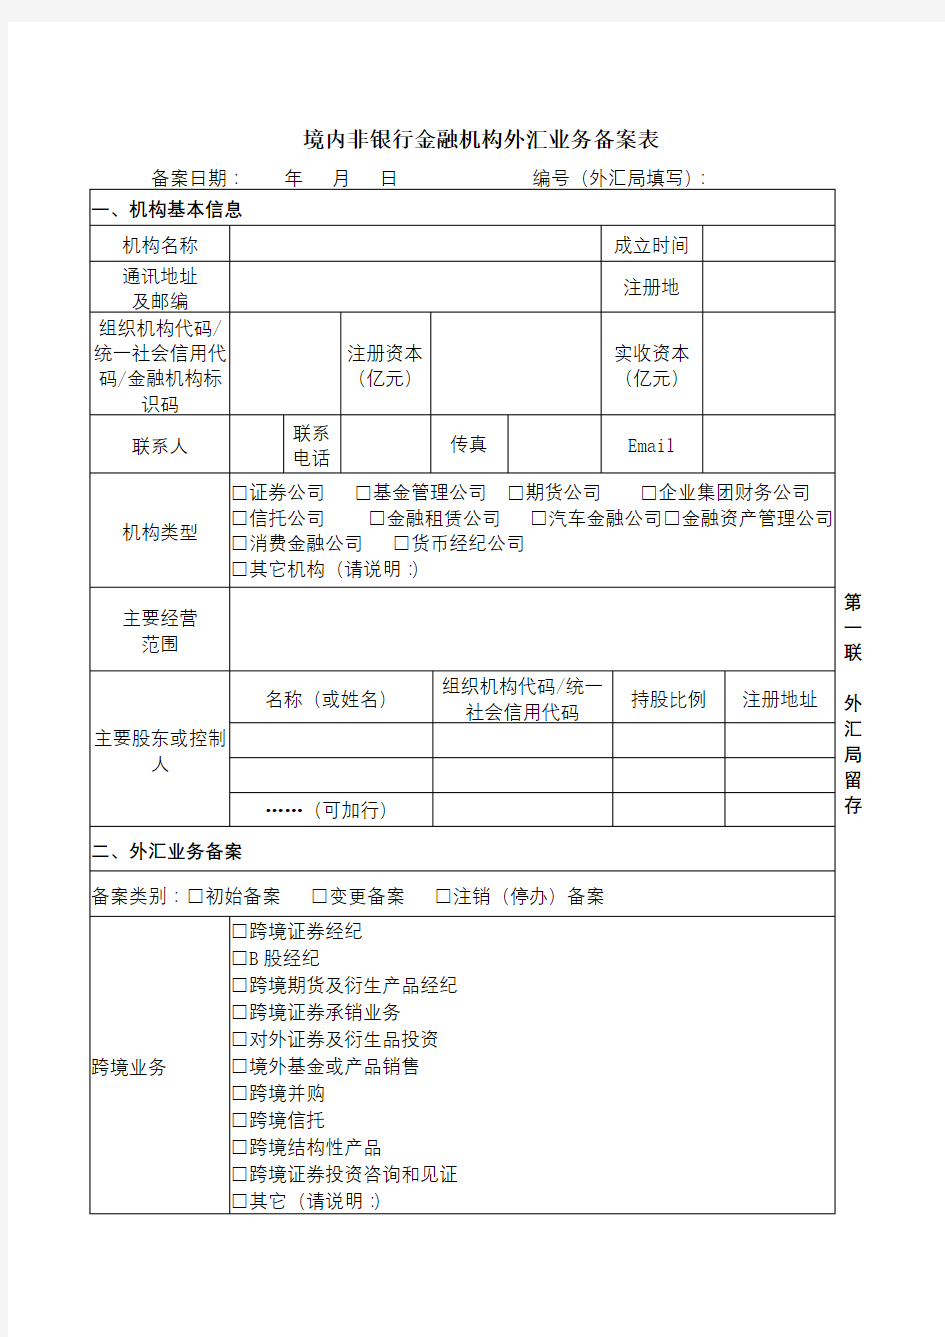 境内非银行金融机构外汇业务备案表【模板】